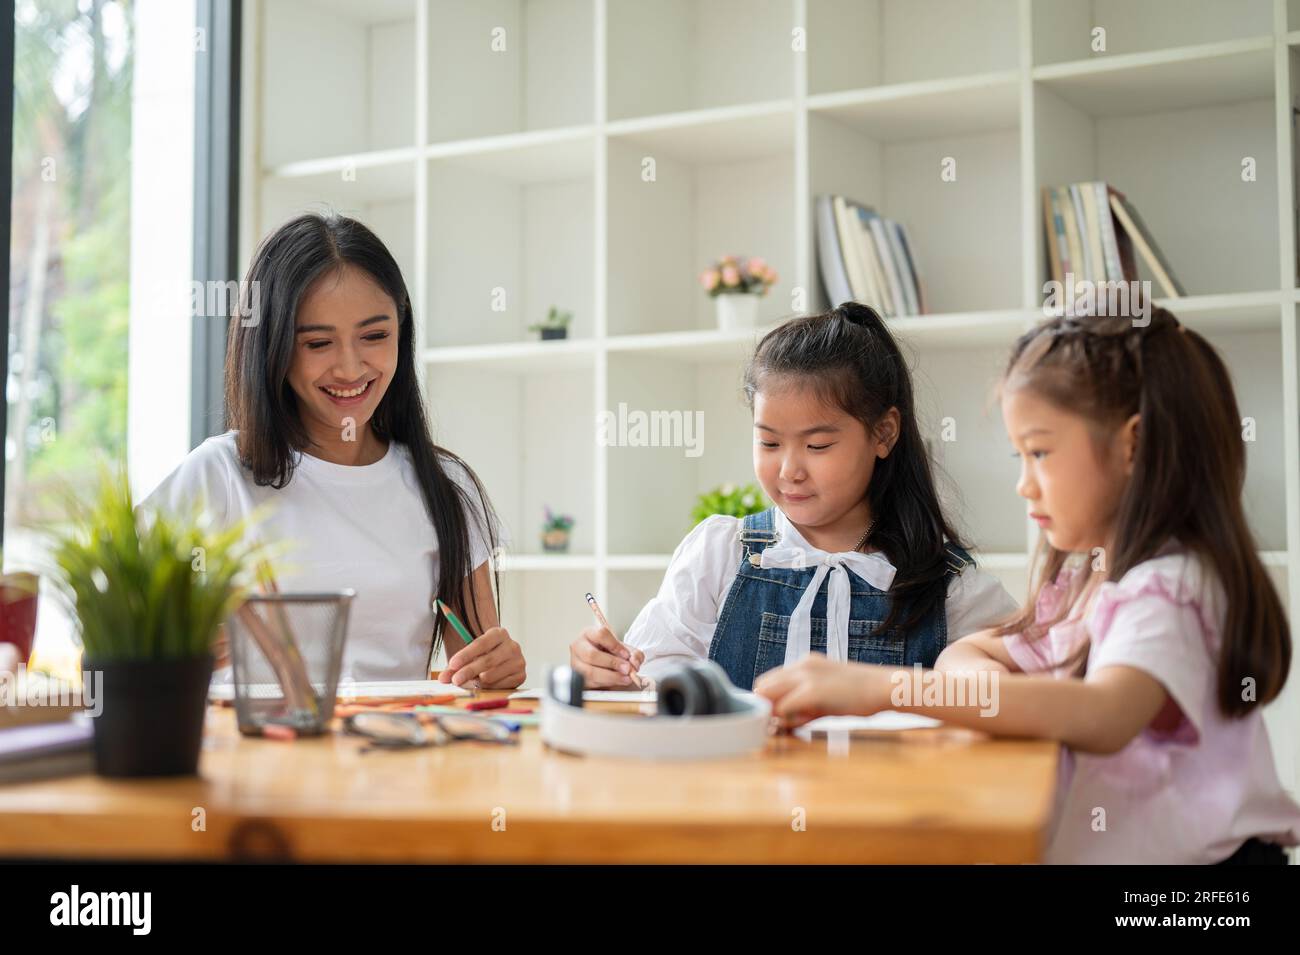 Une enseignante privée asiatique amicale et gentille enseigne l'art aux jeunes étudiants à la maison. Enfants de maternelle, élèves de l'école primaire, enfants, bébé Banque D'Images